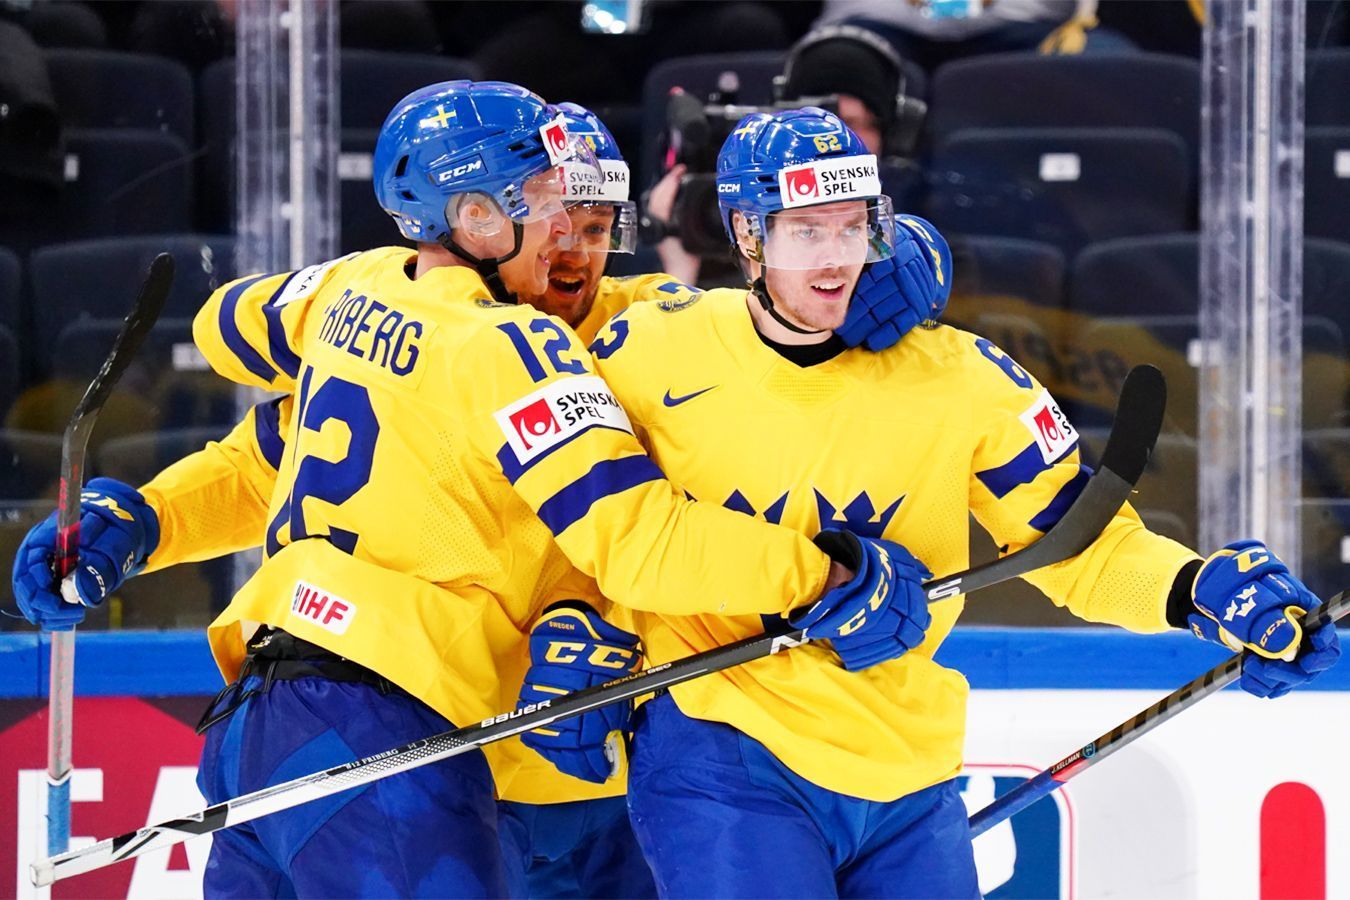 Швеция — Канада прогноз на матч 26 мая на ЧМ-2022 по хоккею: ставки и коэффициенты на игру